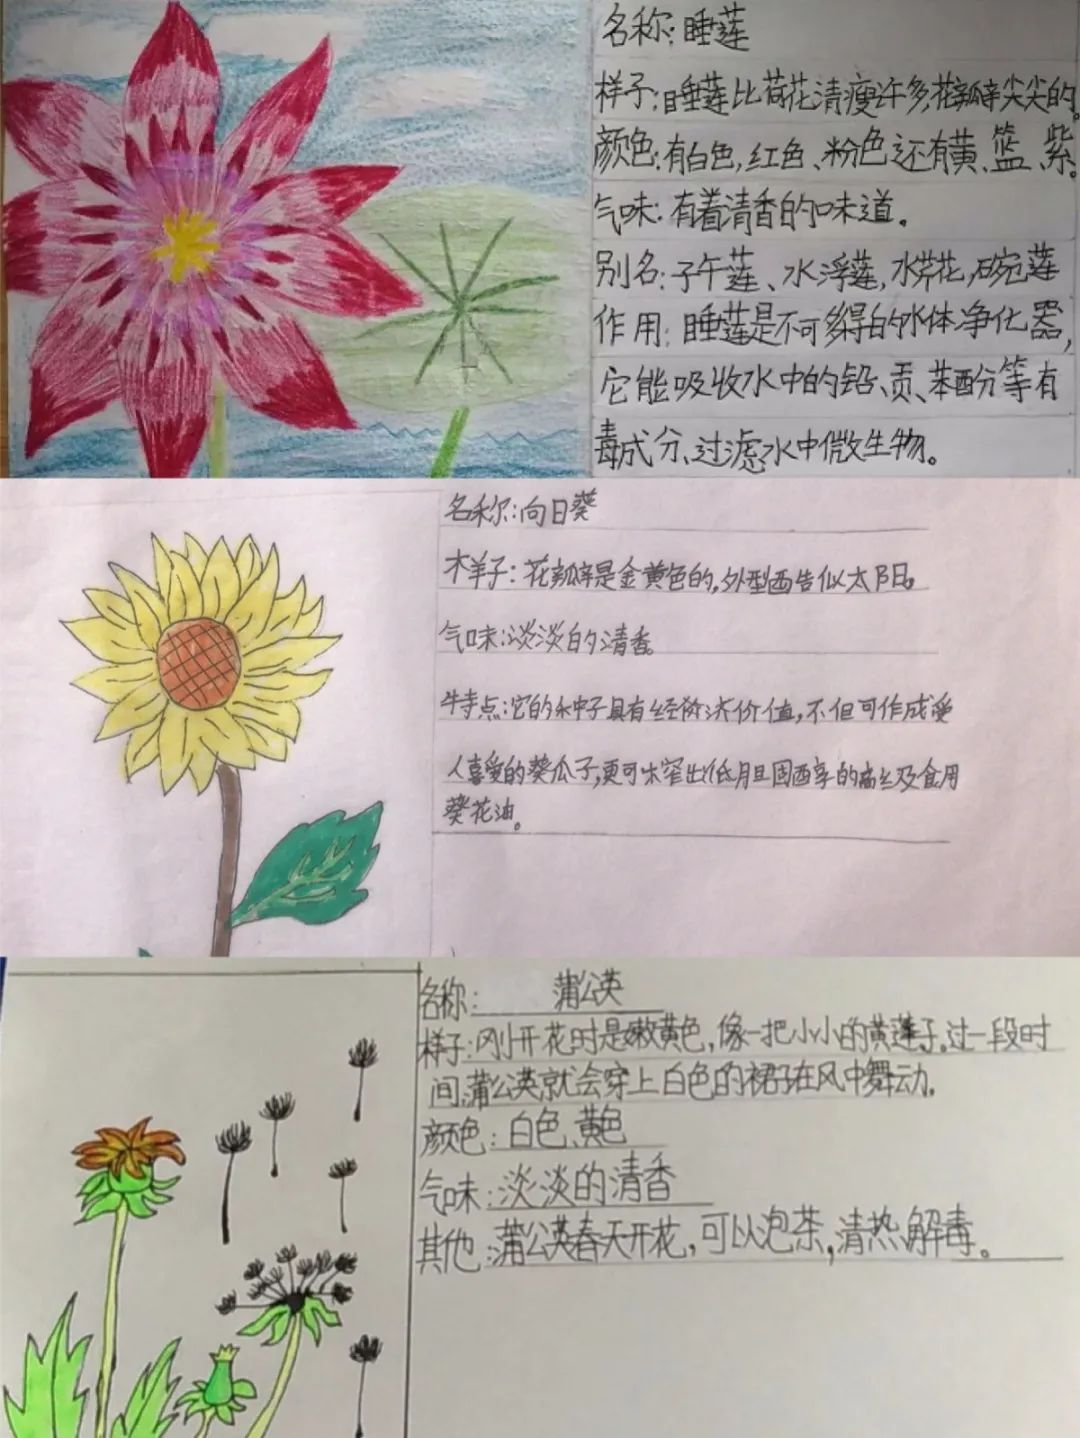 作业植物卡检查作业文:陈秀飞图:三年级班主任审稿:黄桂香返回搜狐